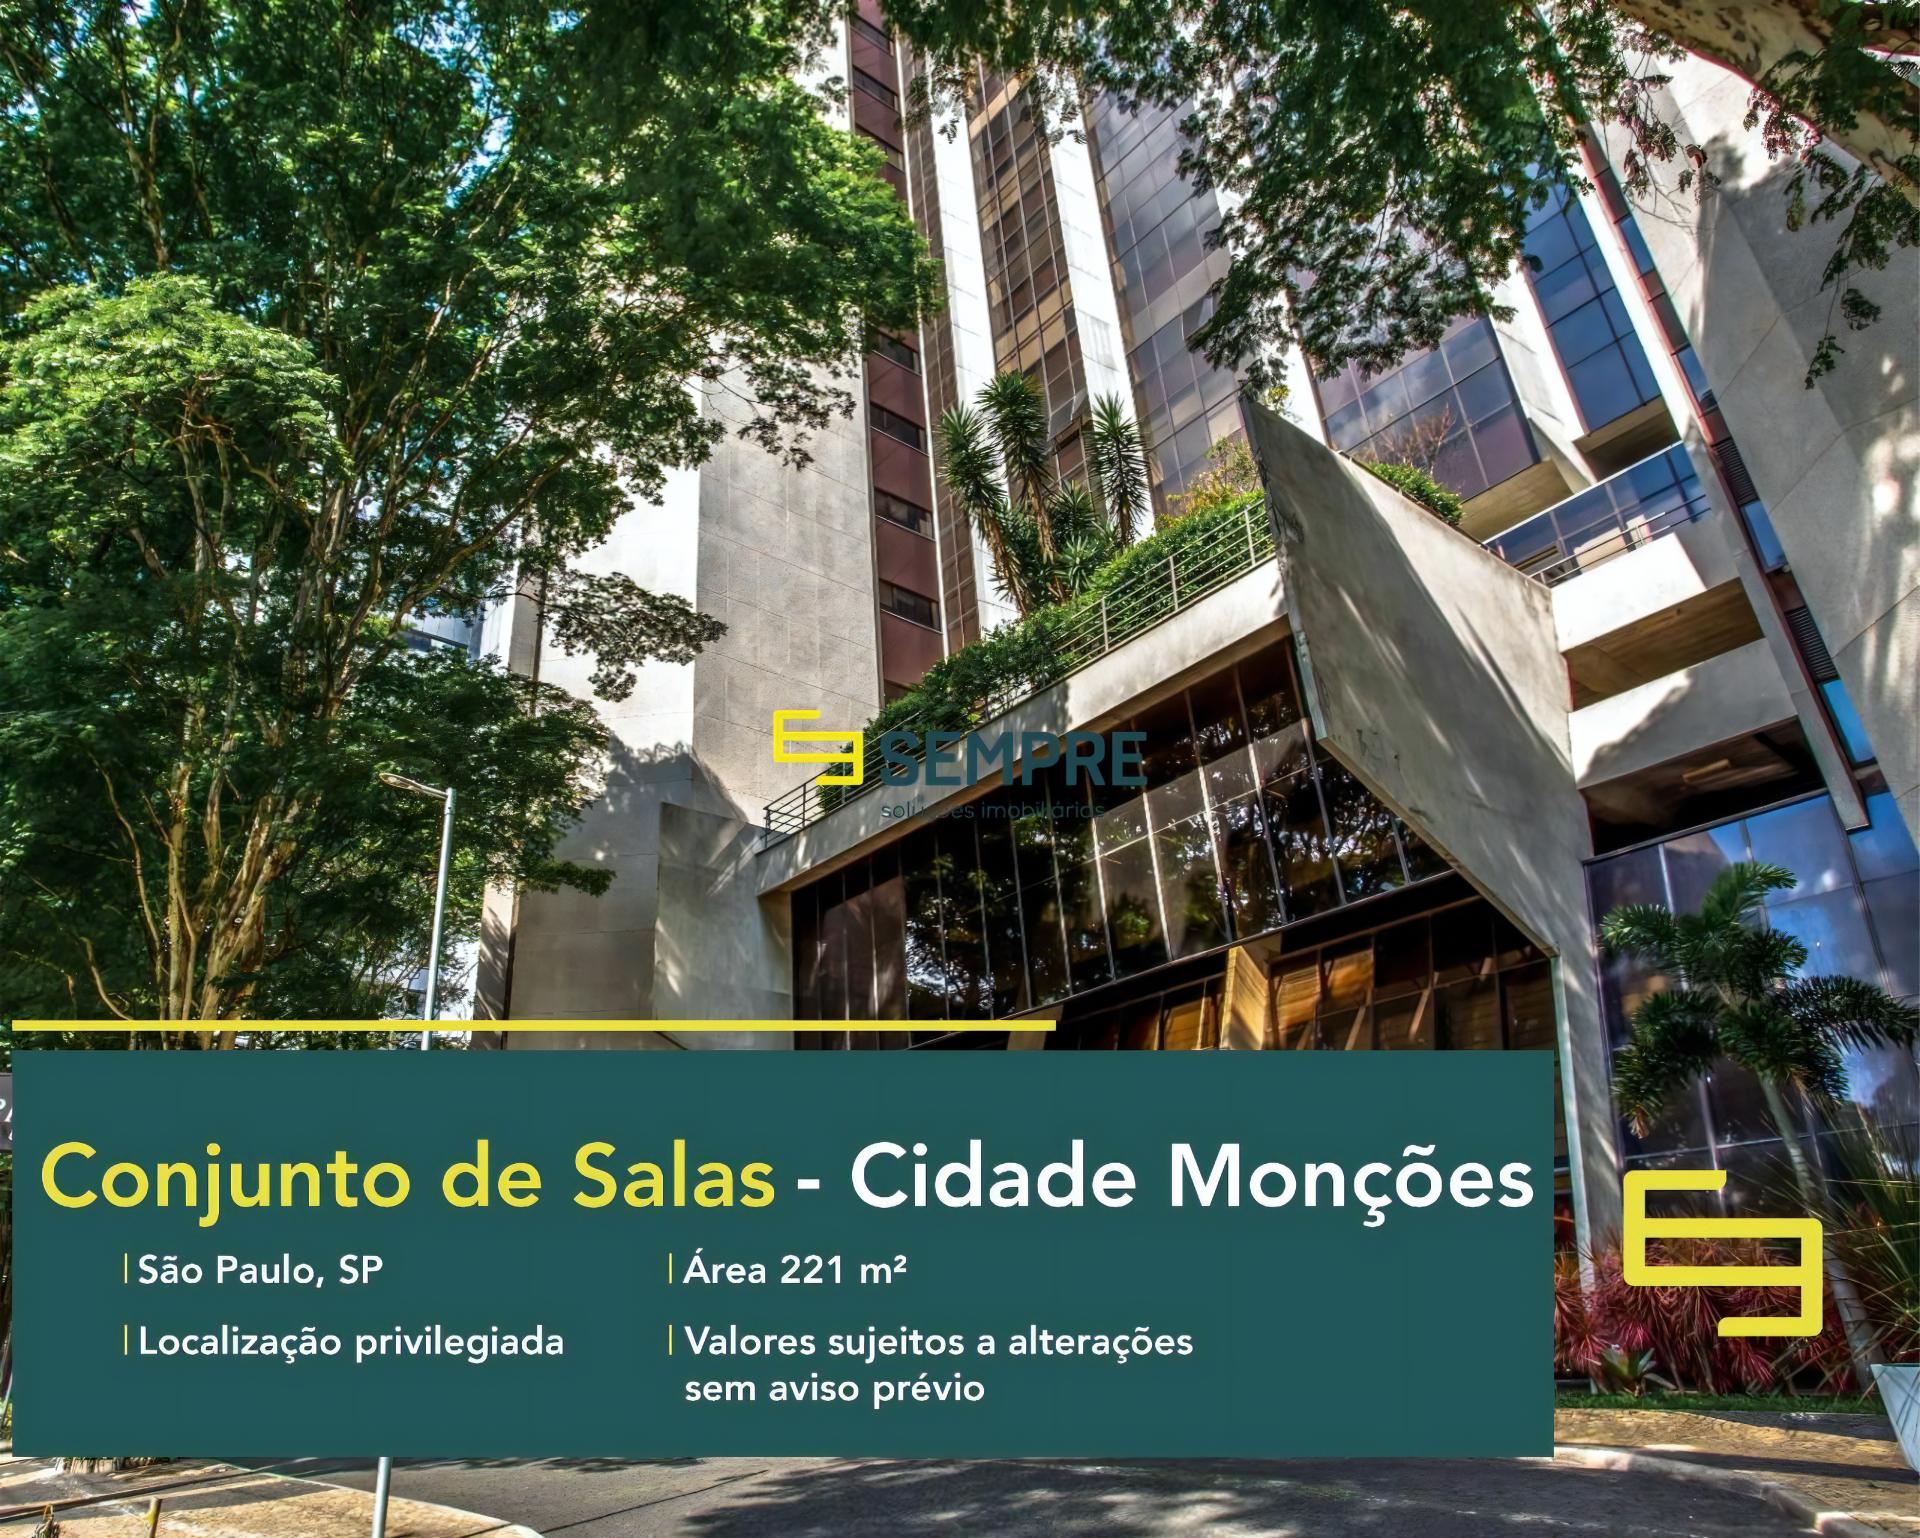 Conjunto de salas comerciais em São Paulo para locação, excelente localização. O estabelecimento comercial conta com área de 221 m².